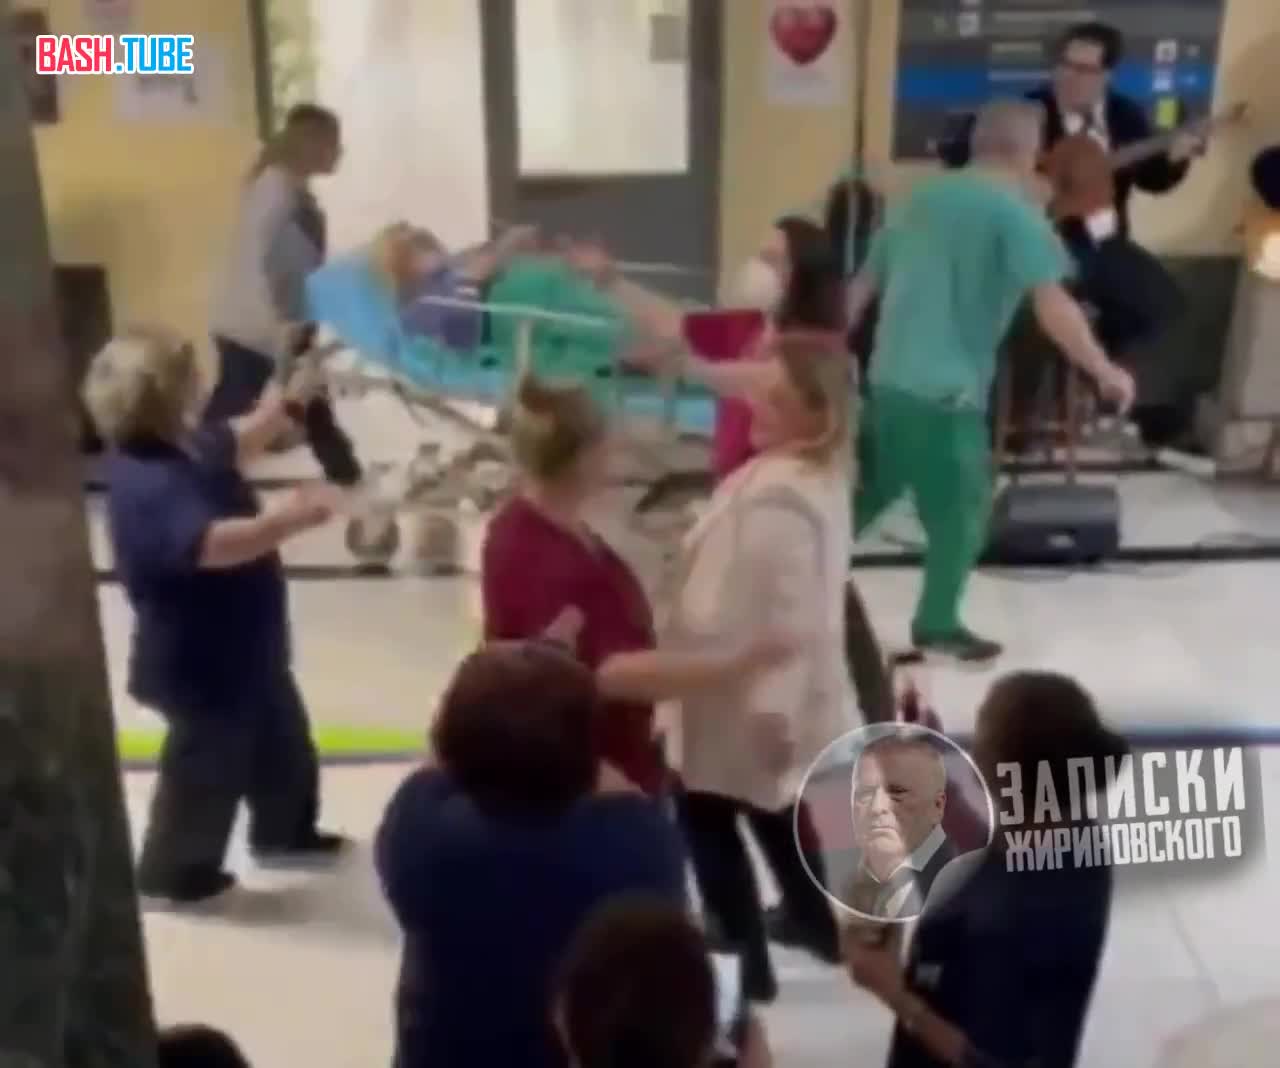  Сотрудники больницы танцуют под музыку, пока мимо везут больного на каталке